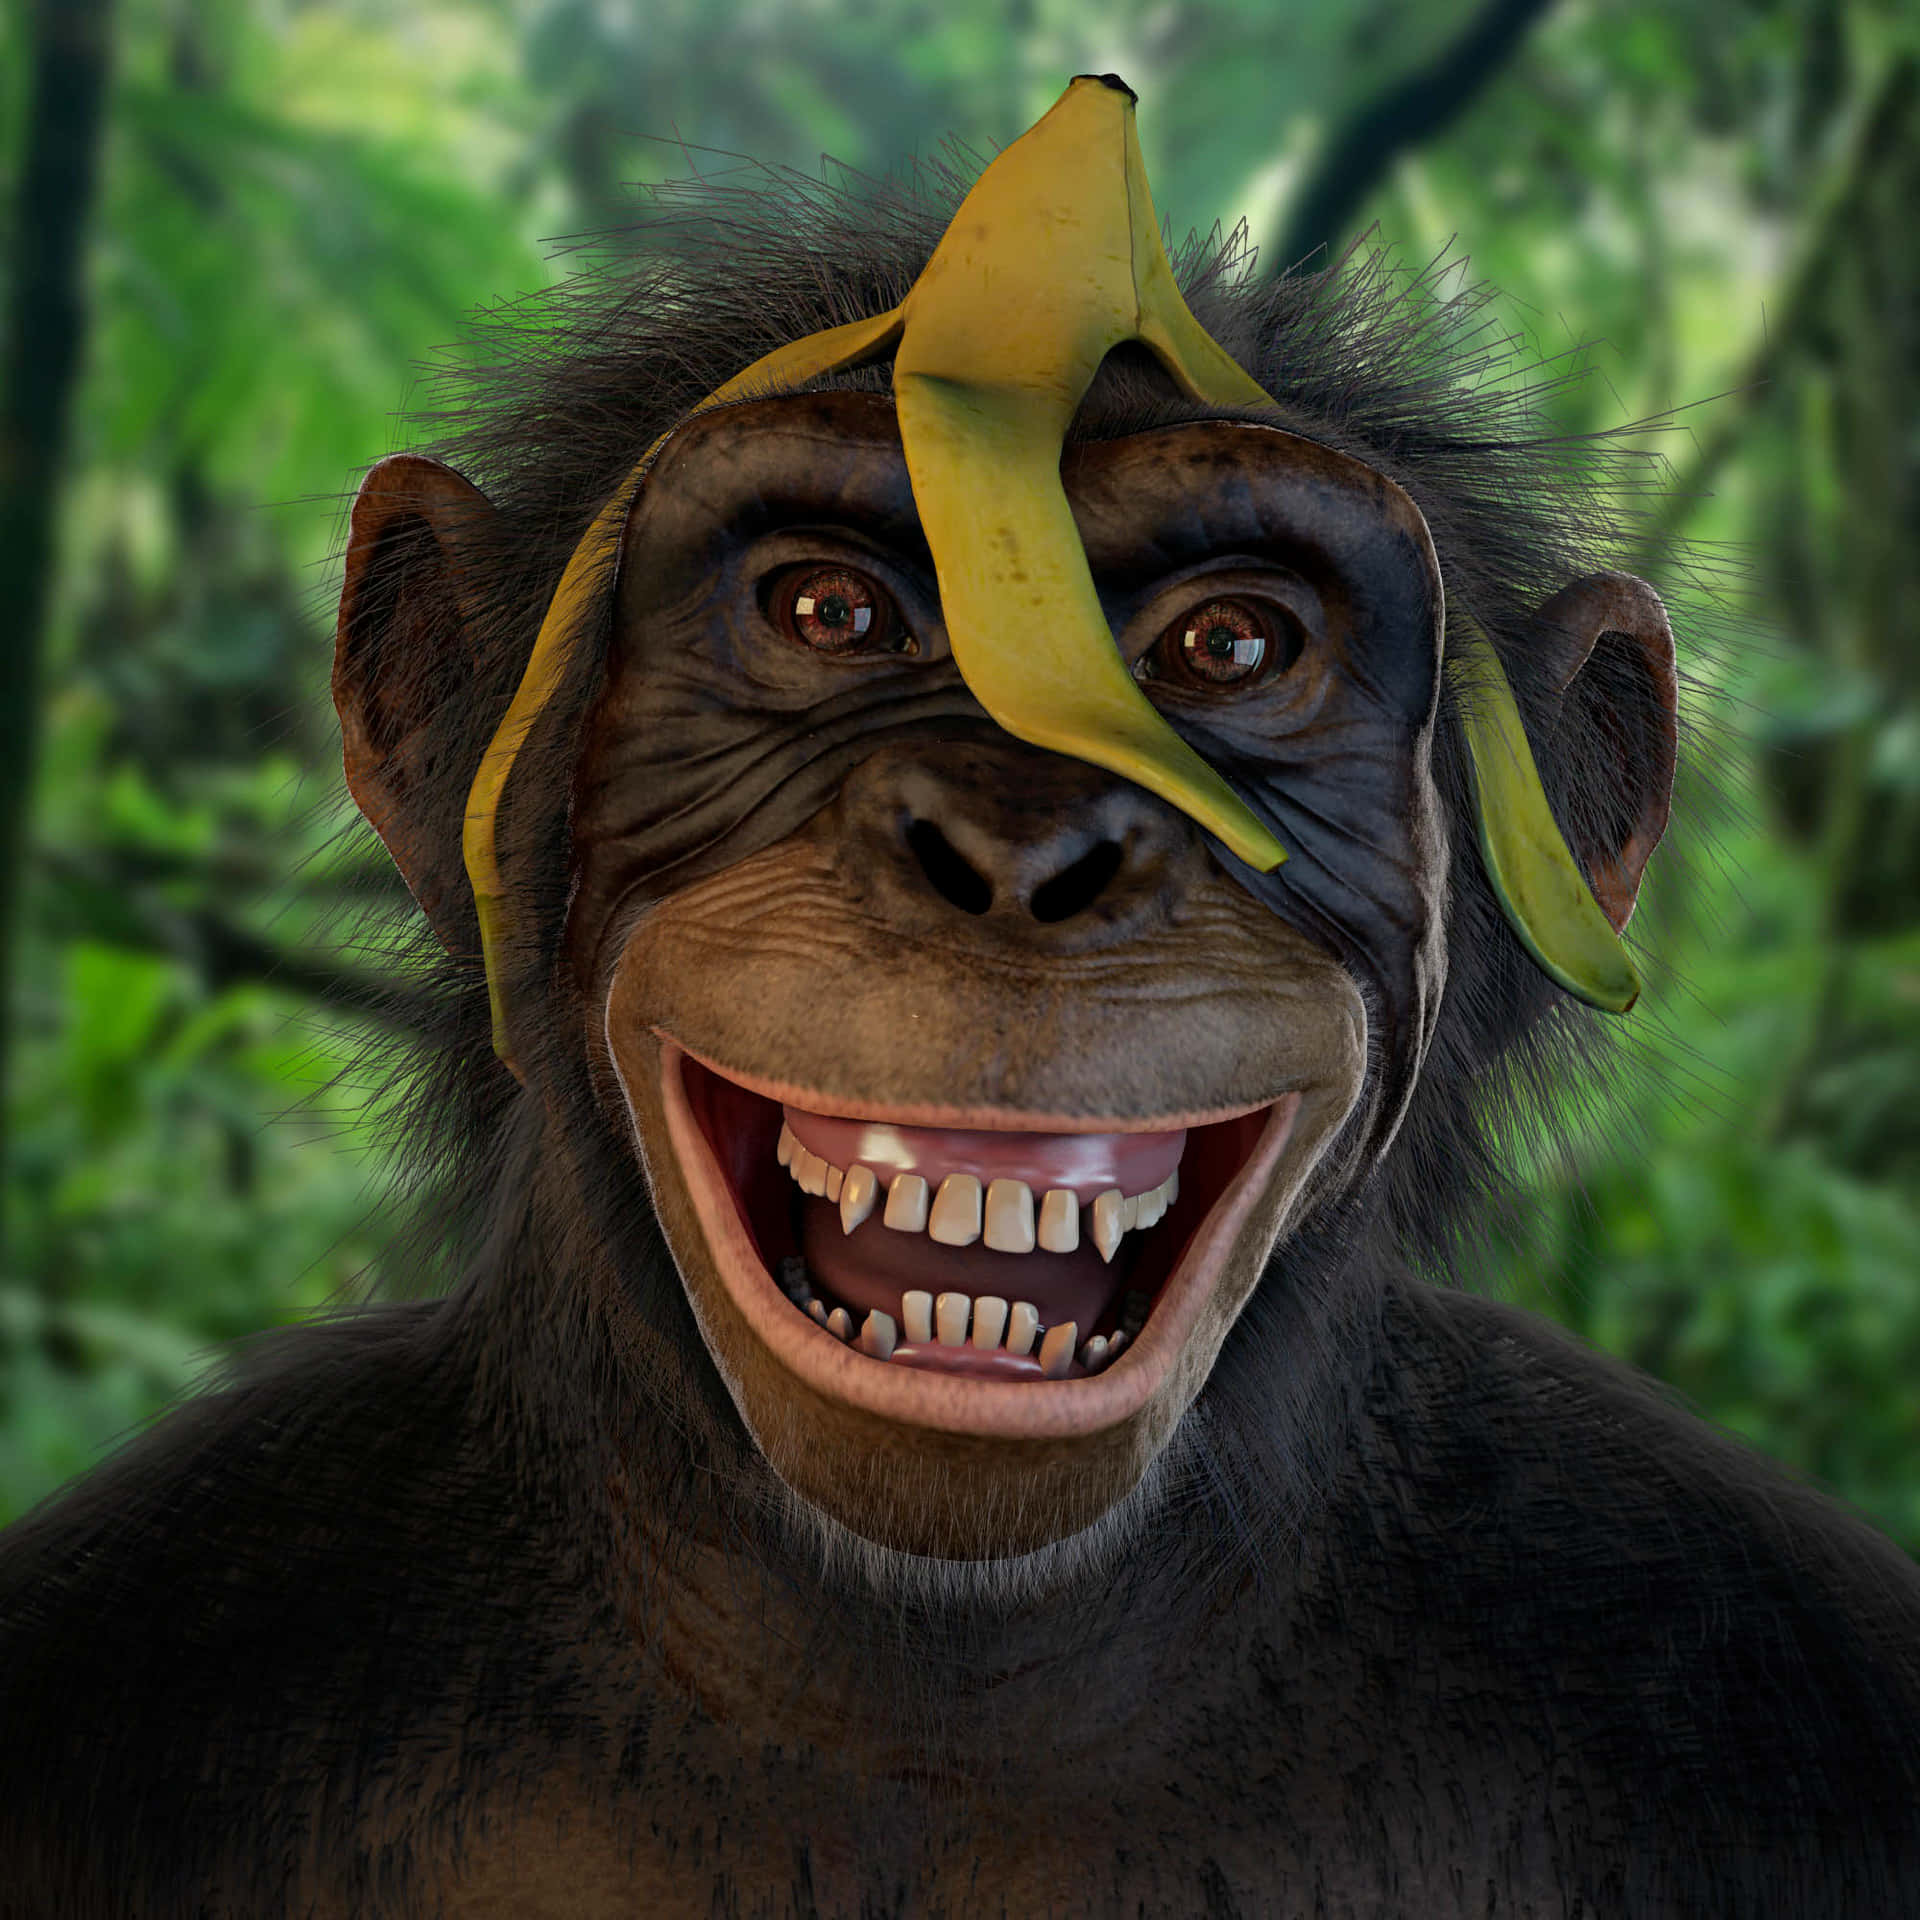 Imagende Un Chimpancé Con Plátano, Mono Negro.